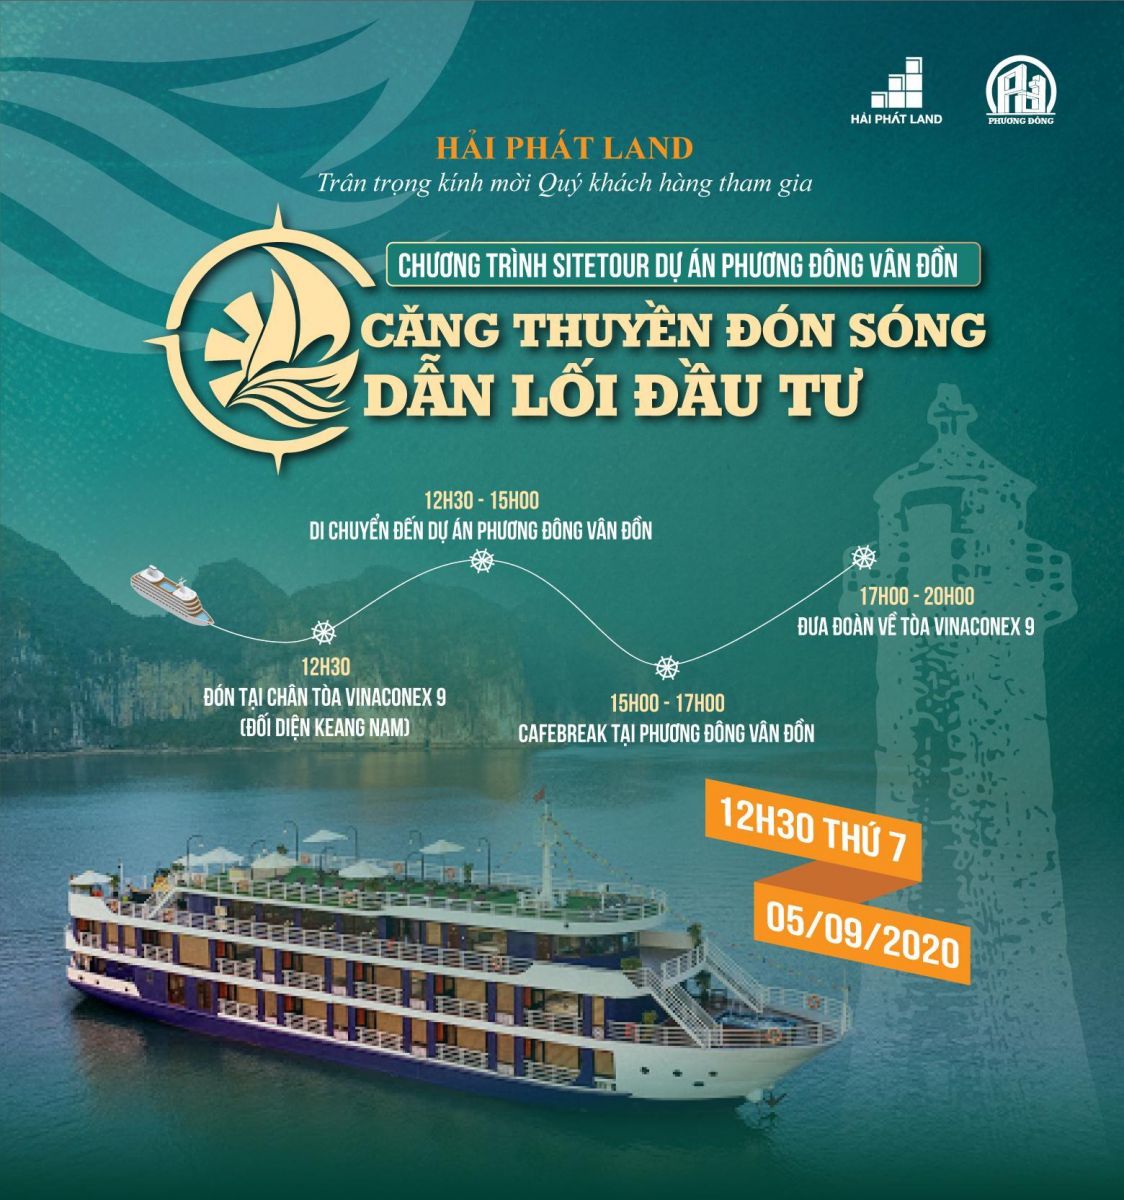 Chương trình sitetour dự án Phương Đông Vân Đồn: Căng thuyền đón sóng - Dẫn lối đầu tư